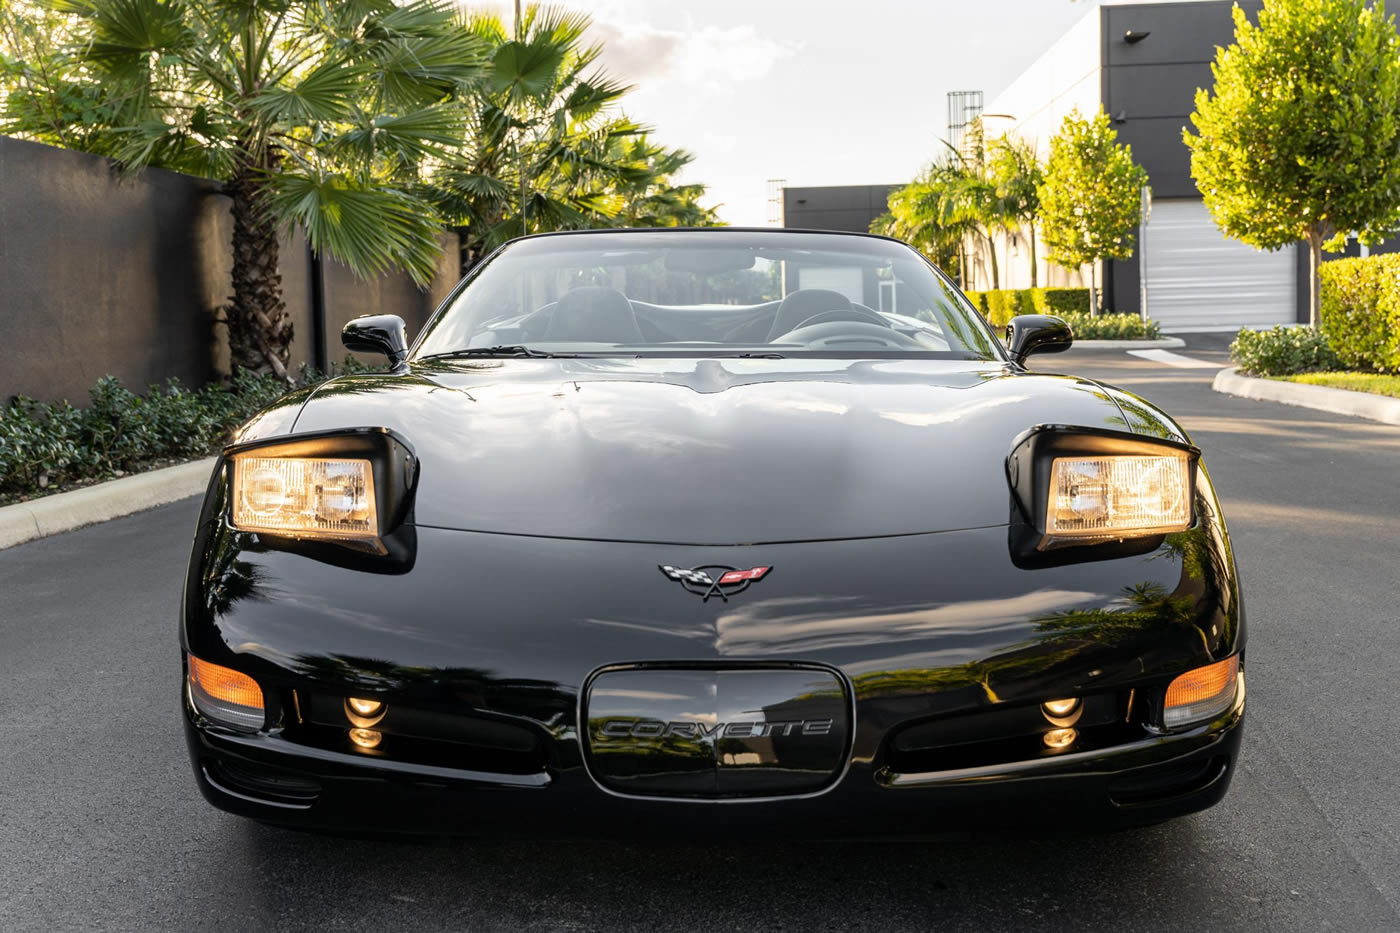 2002 Corvette Convertible in Black